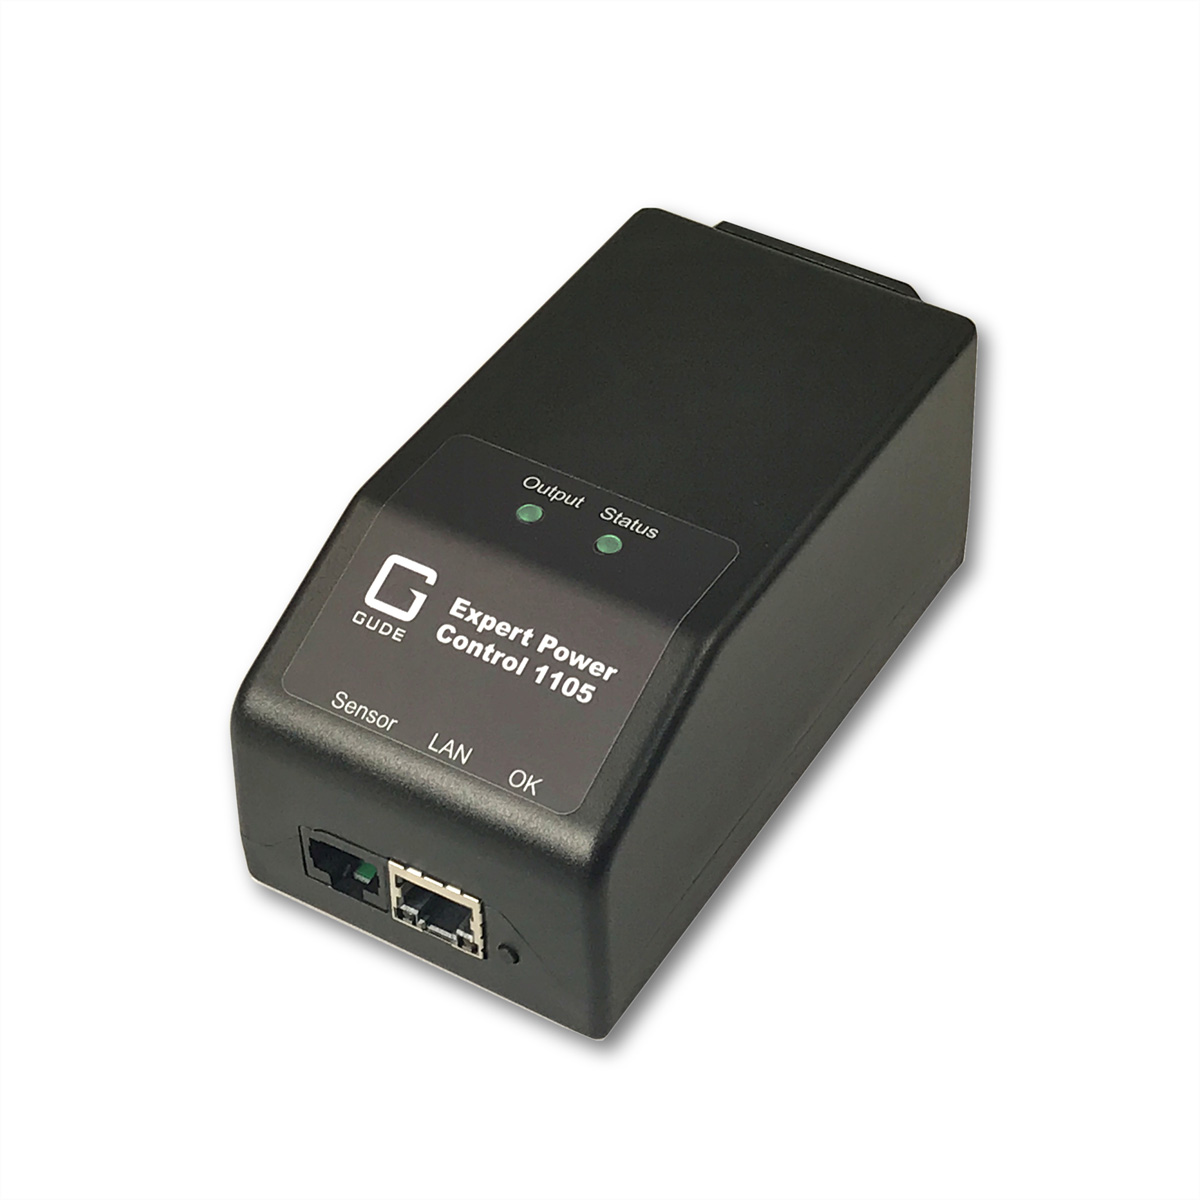 GUDE 11052 EPC NET IP-Fernschaltsteckdose, IEC-Anschluss, Sensorport, Messung